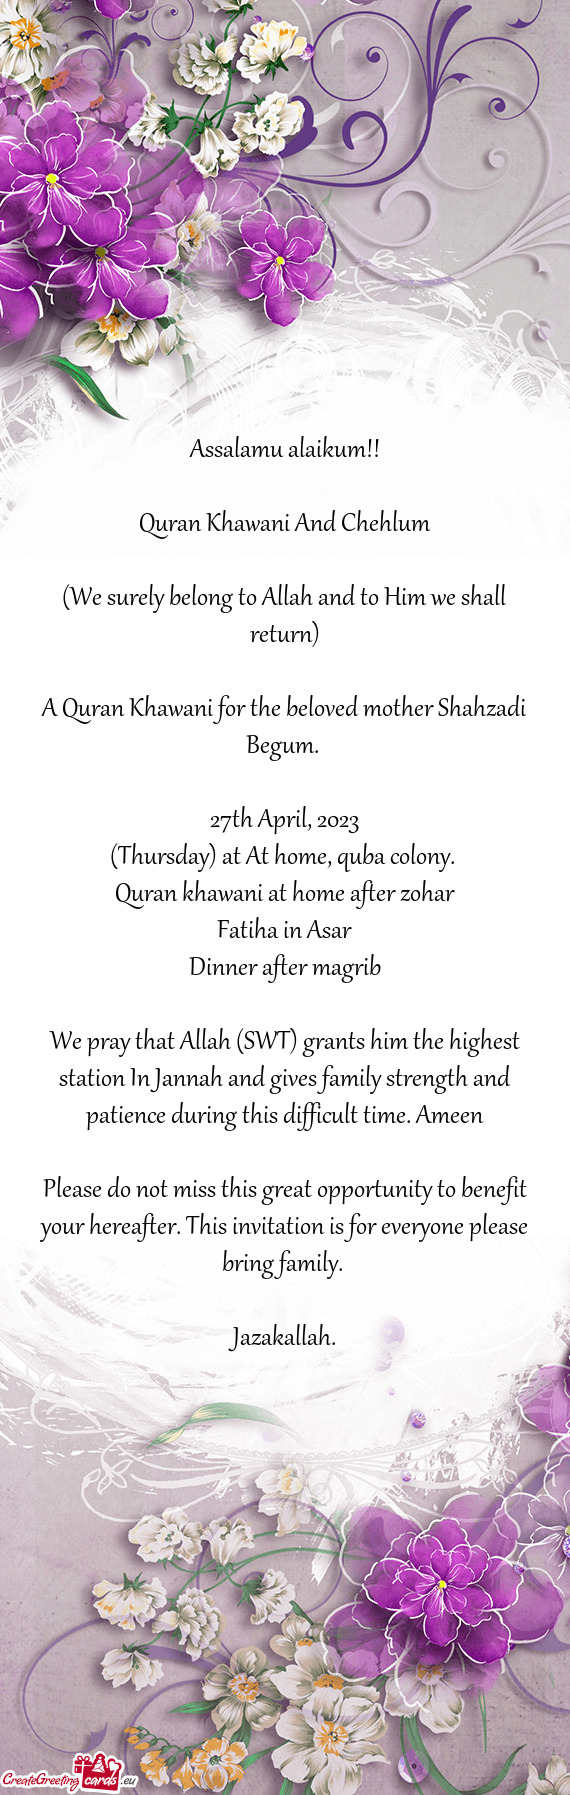 Quran khawani at home after zohar